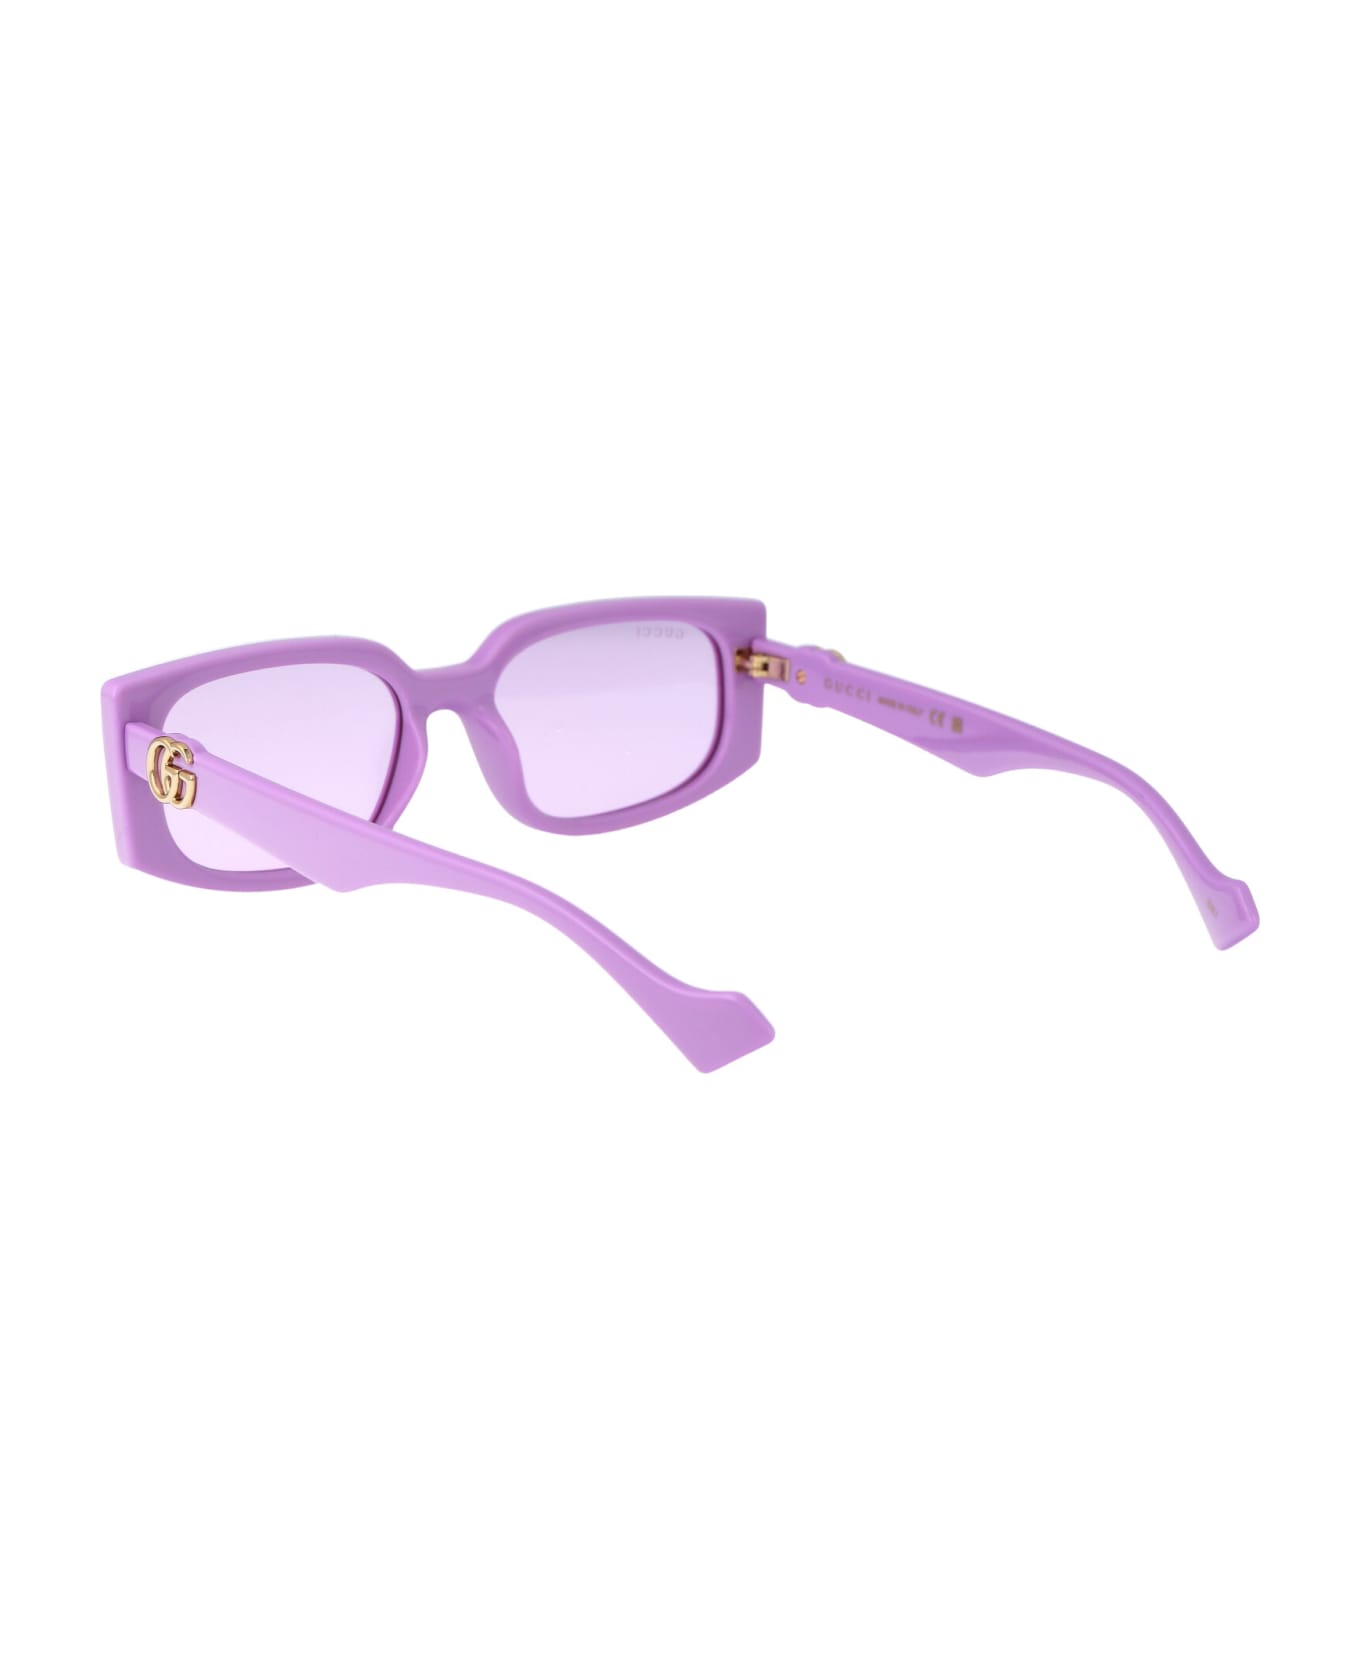 Gucci Eyewear Gg1534s Sunglasses - 004 VIOLET VIOLET VIOLET サングラス